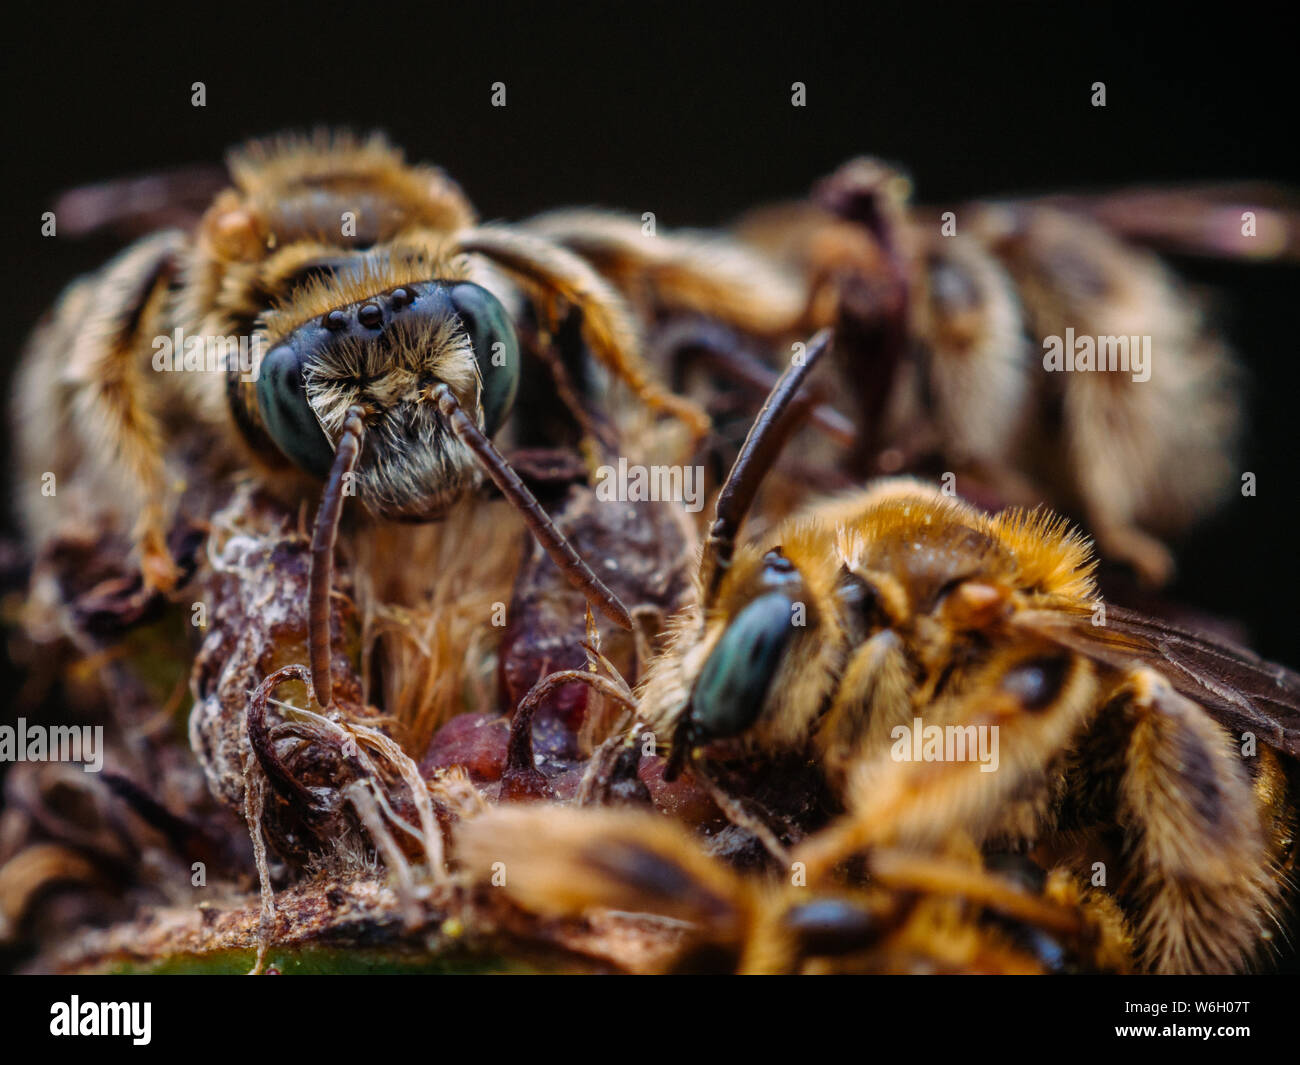 Groupe d'abeilles sauvages dormir ensemble, close-up photo détaillée Banque D'Images